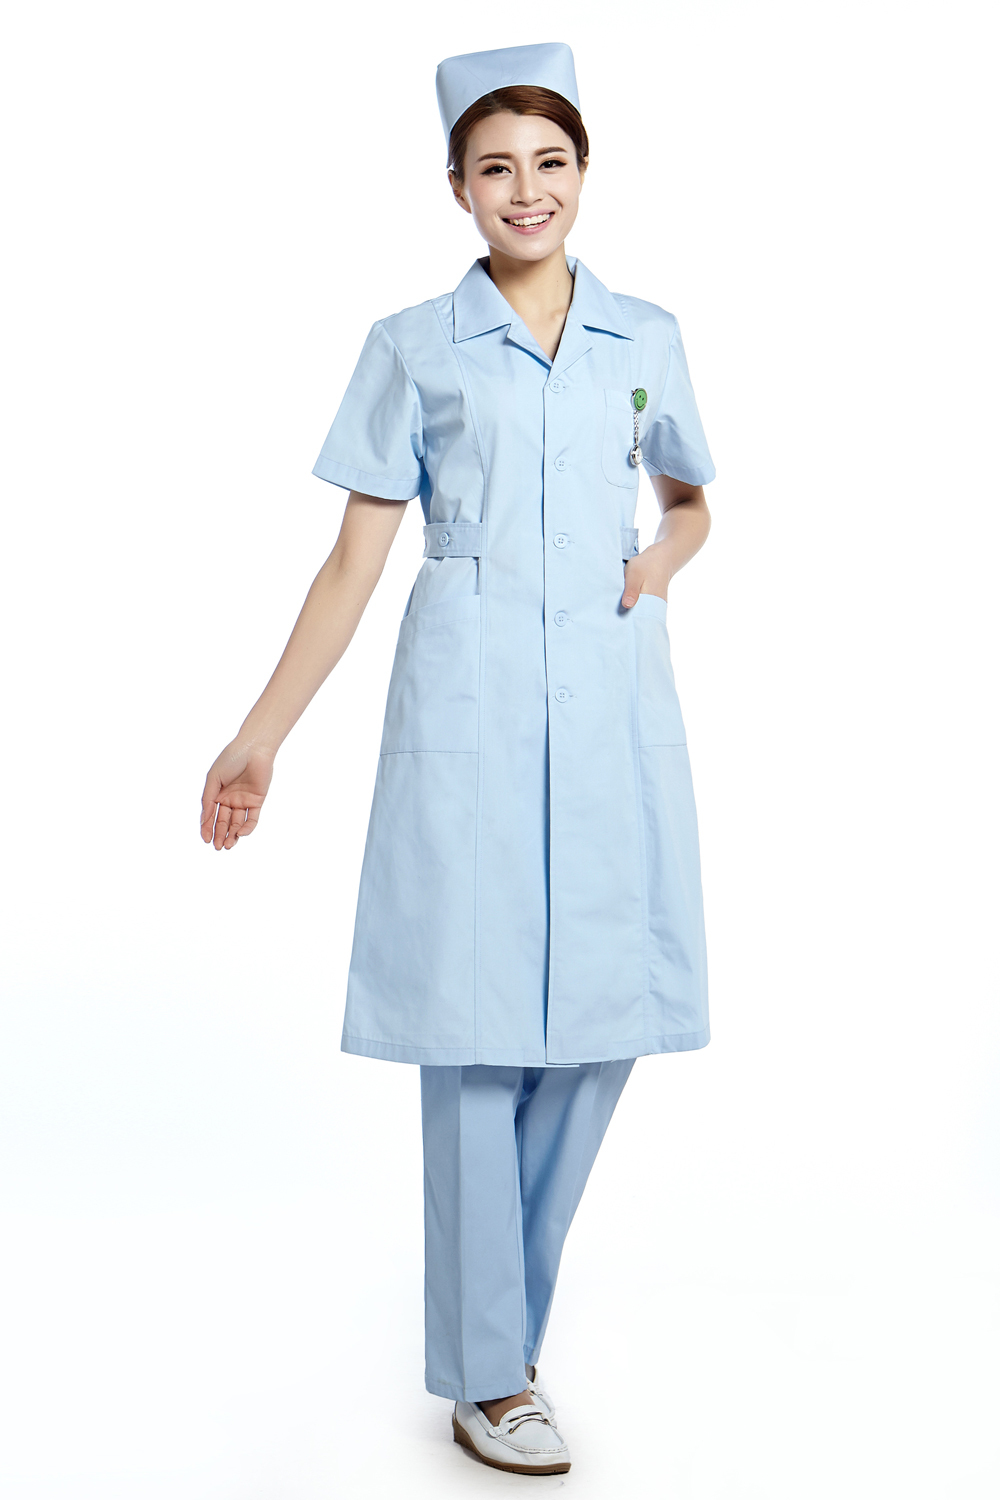 Nurse Uniform Picture 77